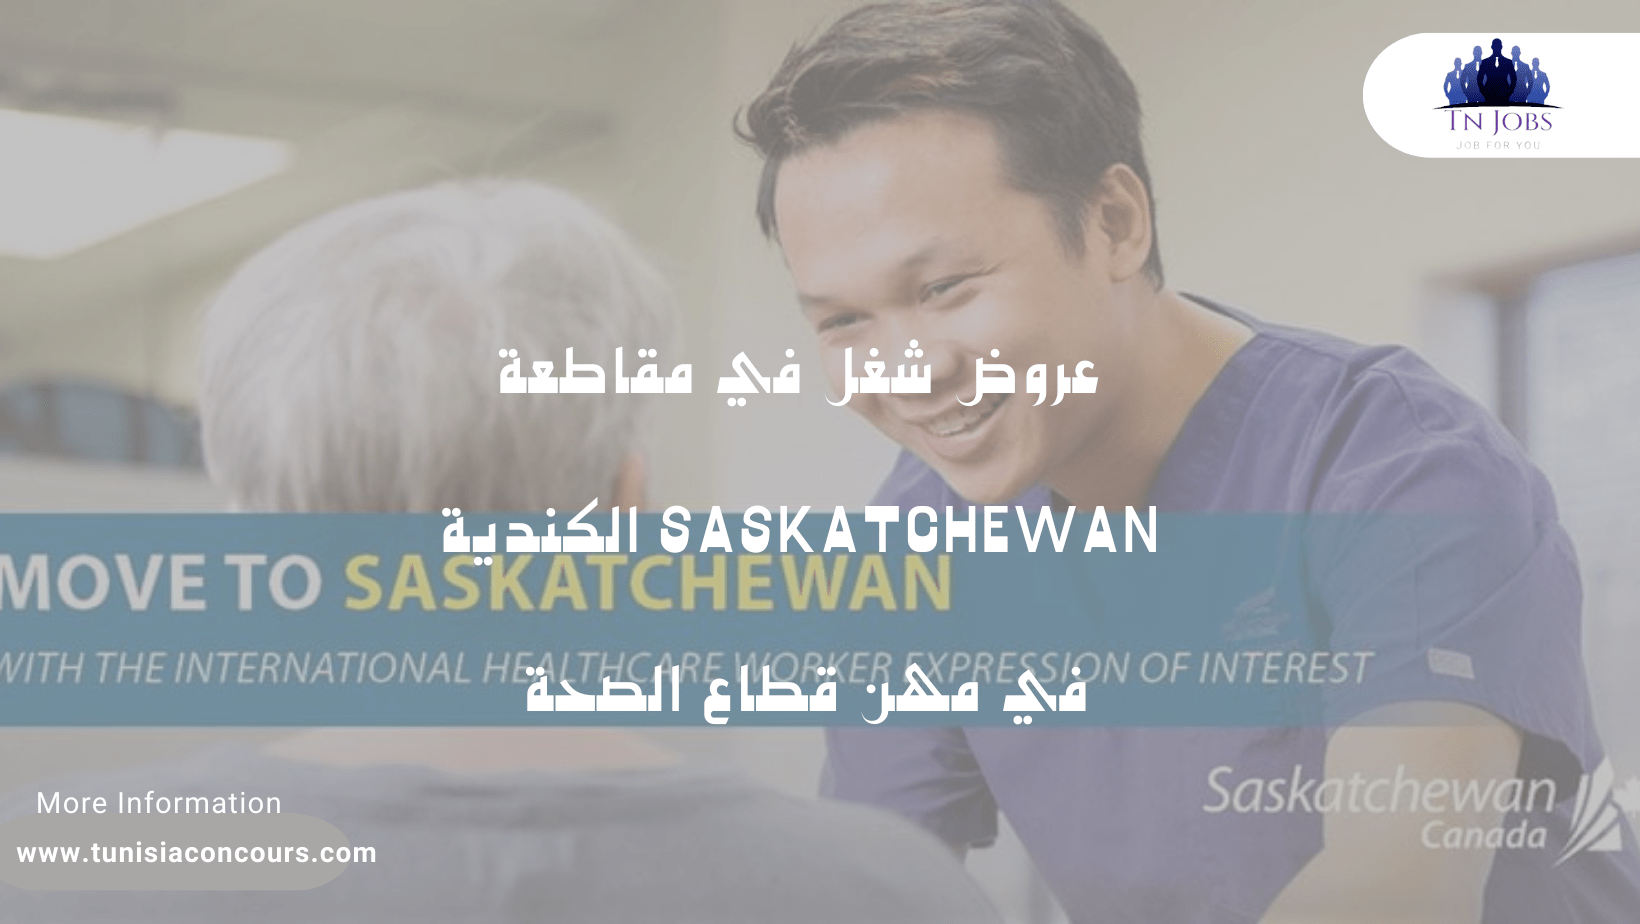 عروض شغل في مقاطعة Saskatchewan الكندية